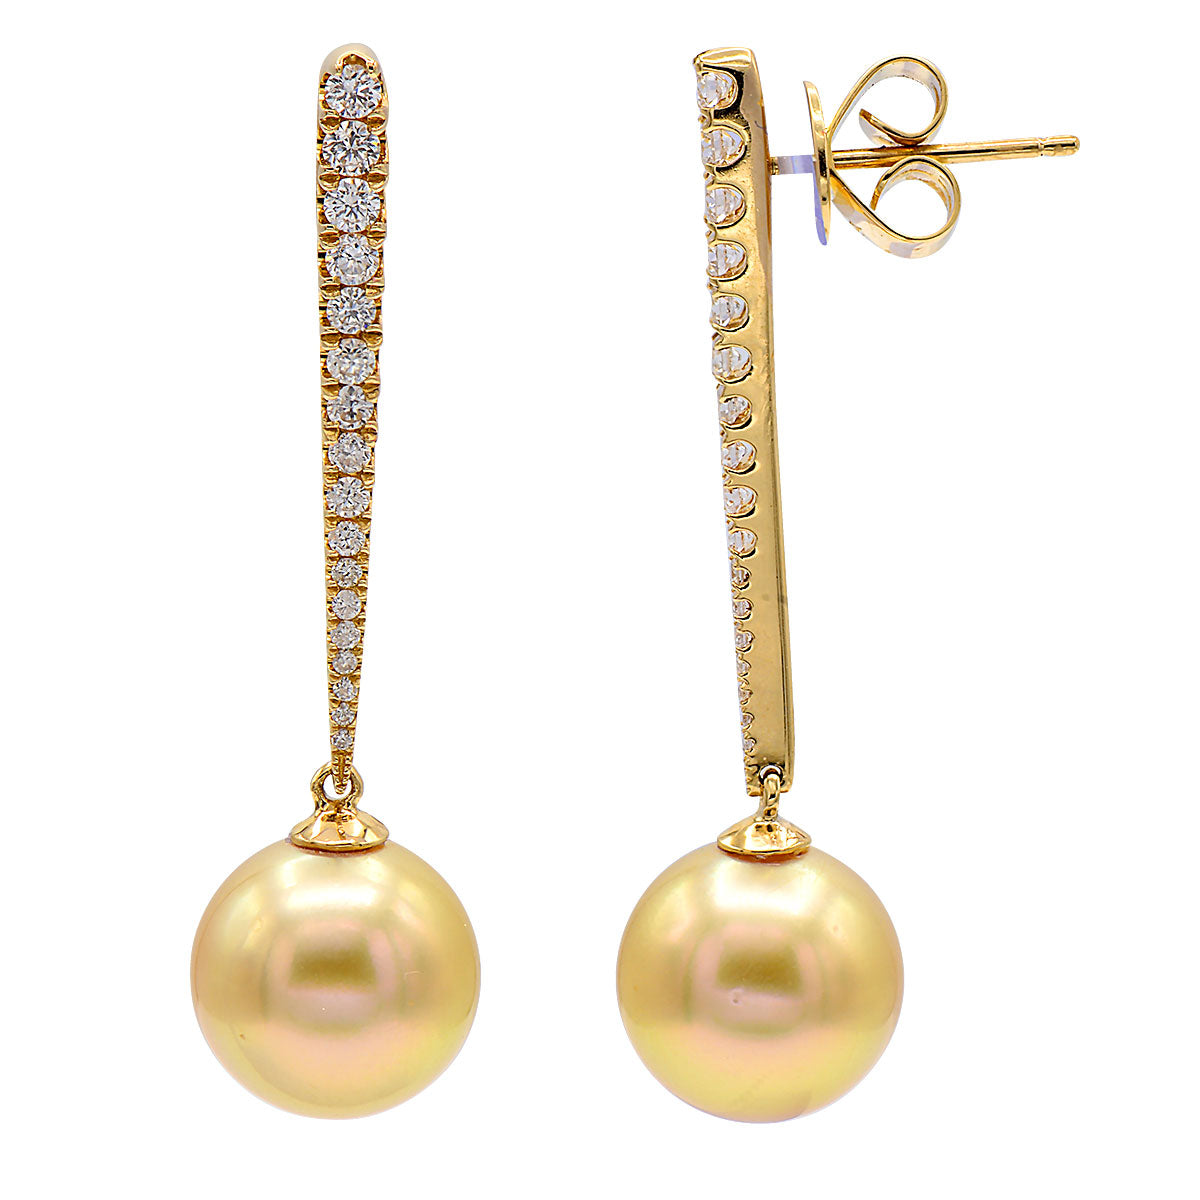 18KY Golden South Sea Pearl Earrings, 10-11mm